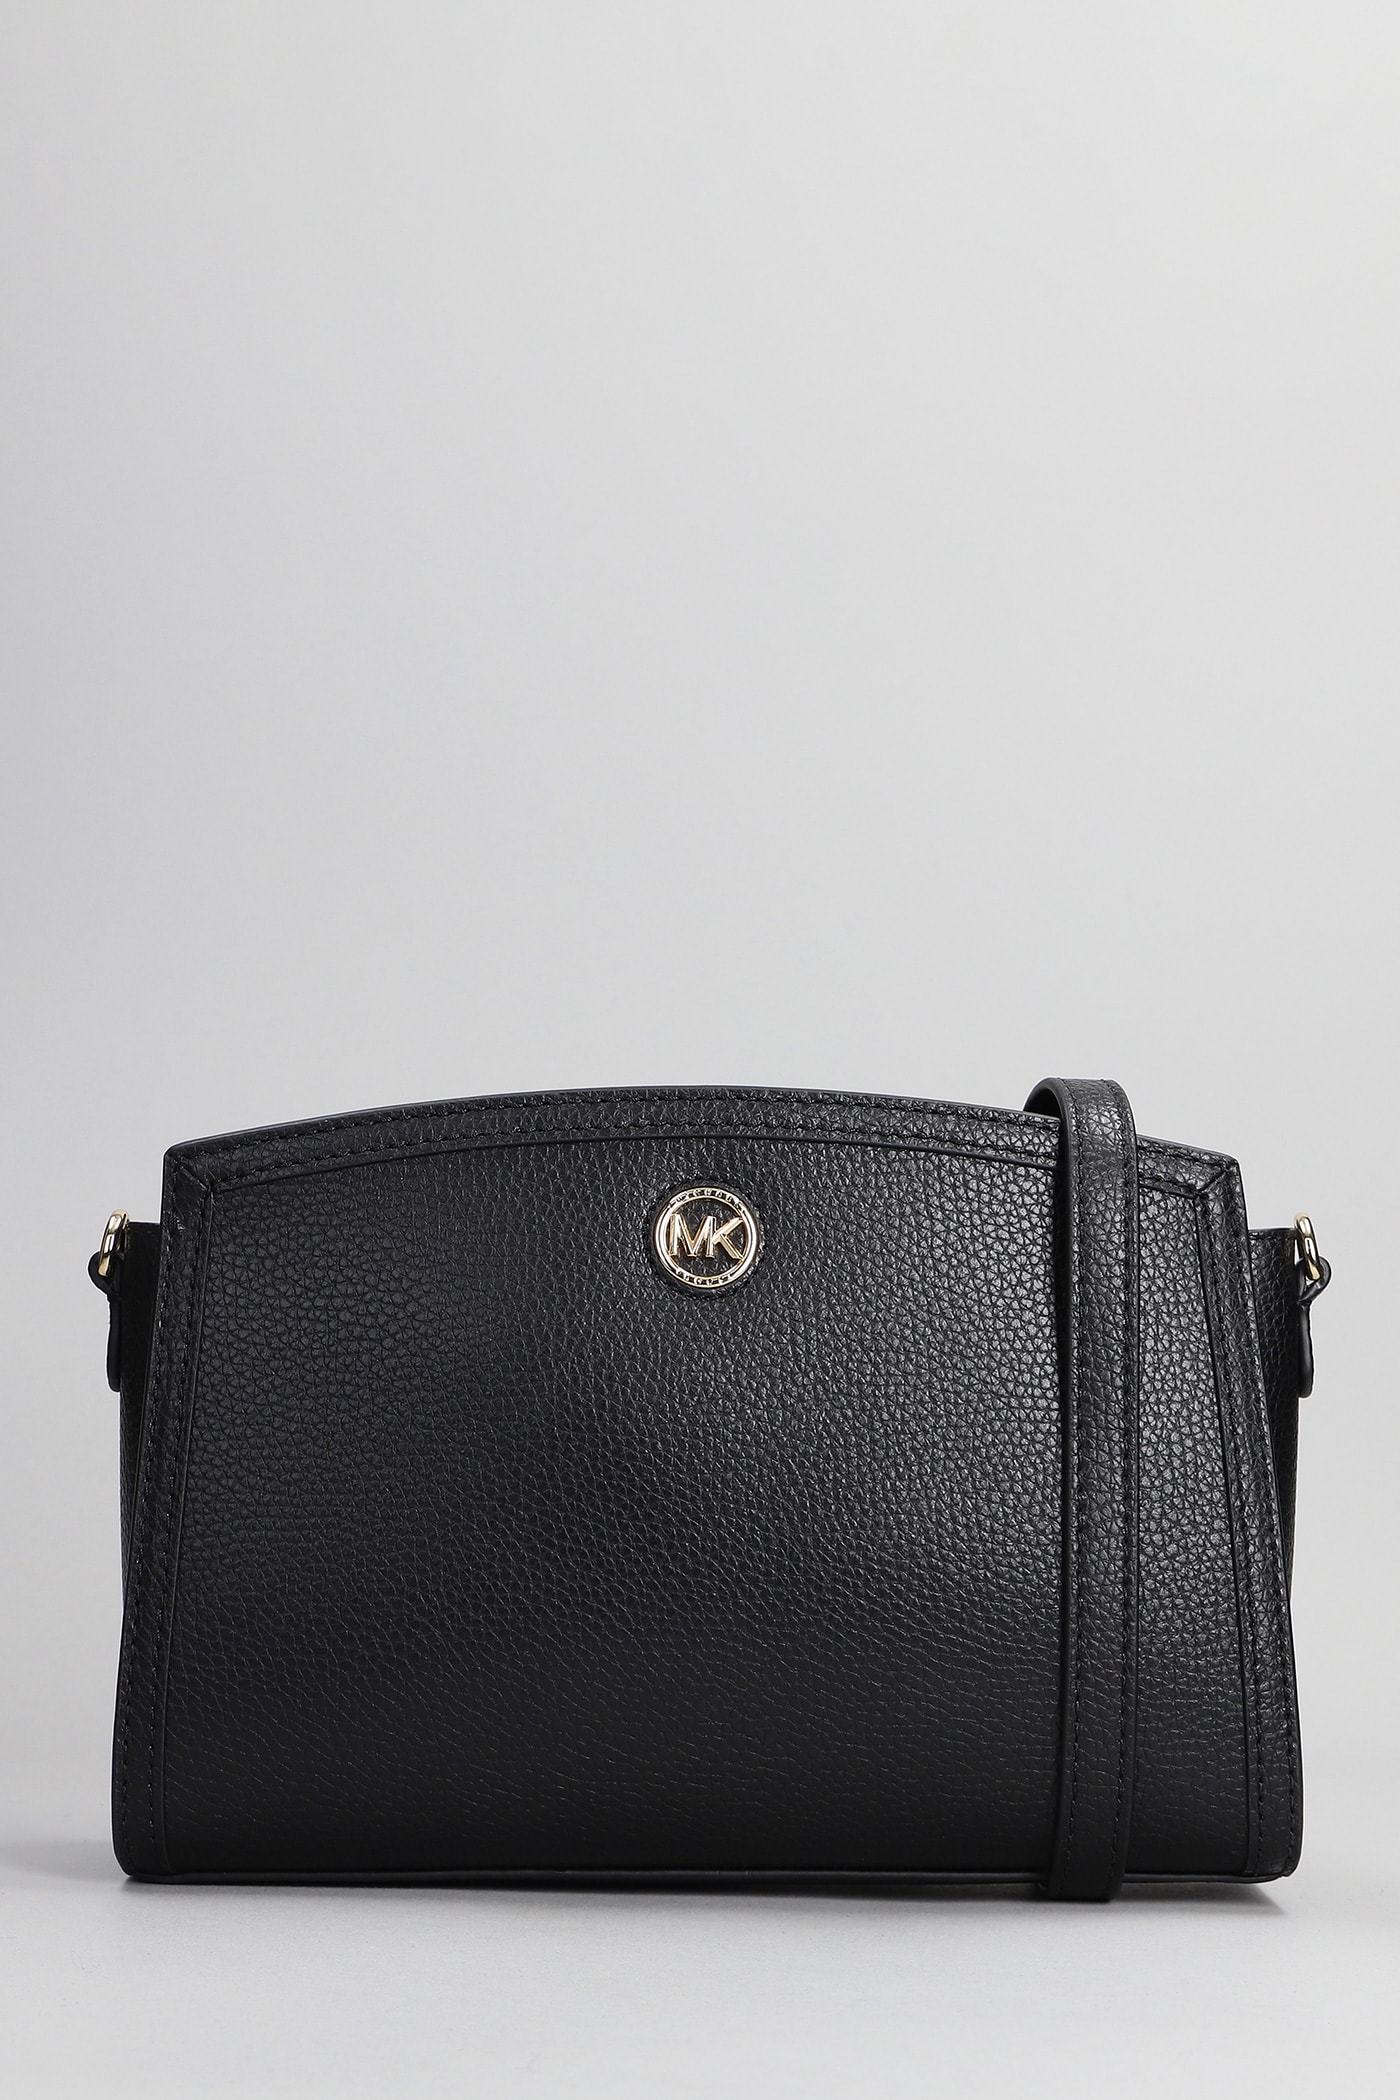 Michael Kors Chantal Shoulder Bag In Black Leather